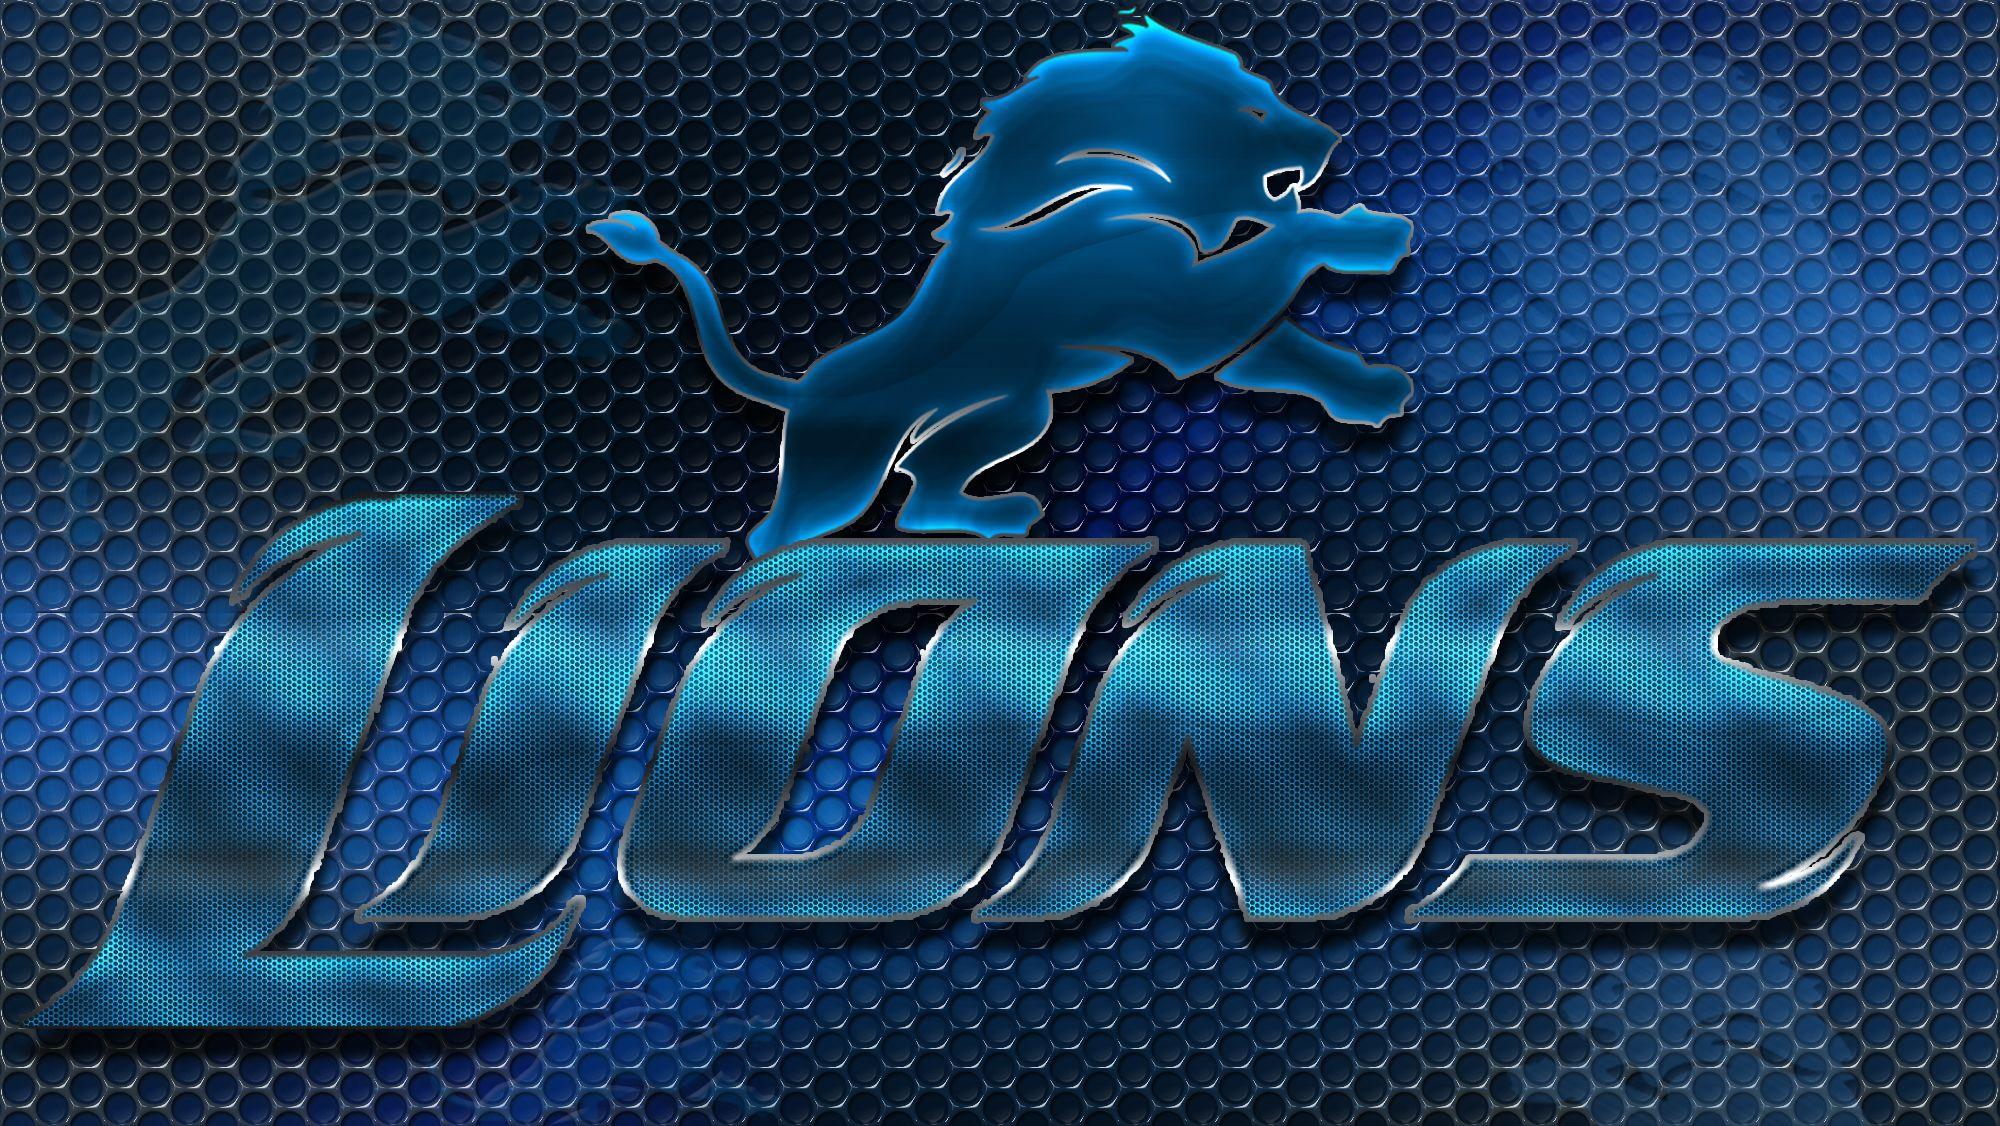 Detroit Lions image Detroit Lions Heavy Metal 16x9 Text N Logo